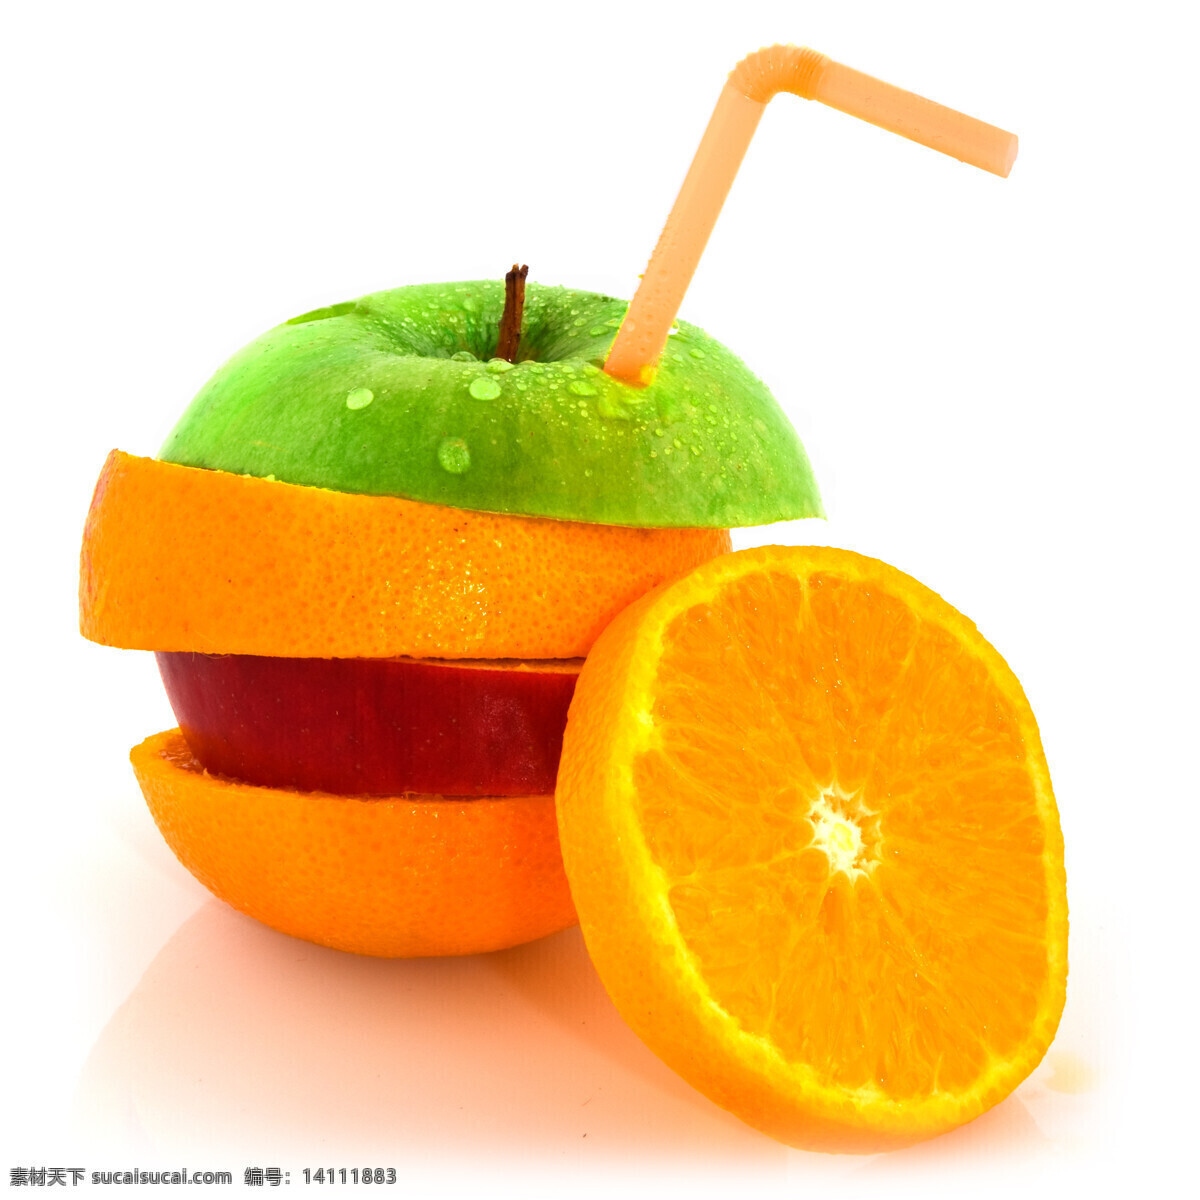 插 新鲜 水果 片 上 吸管 新鲜水果 水果片 橙子片 苹果片 水果图片 餐饮美食